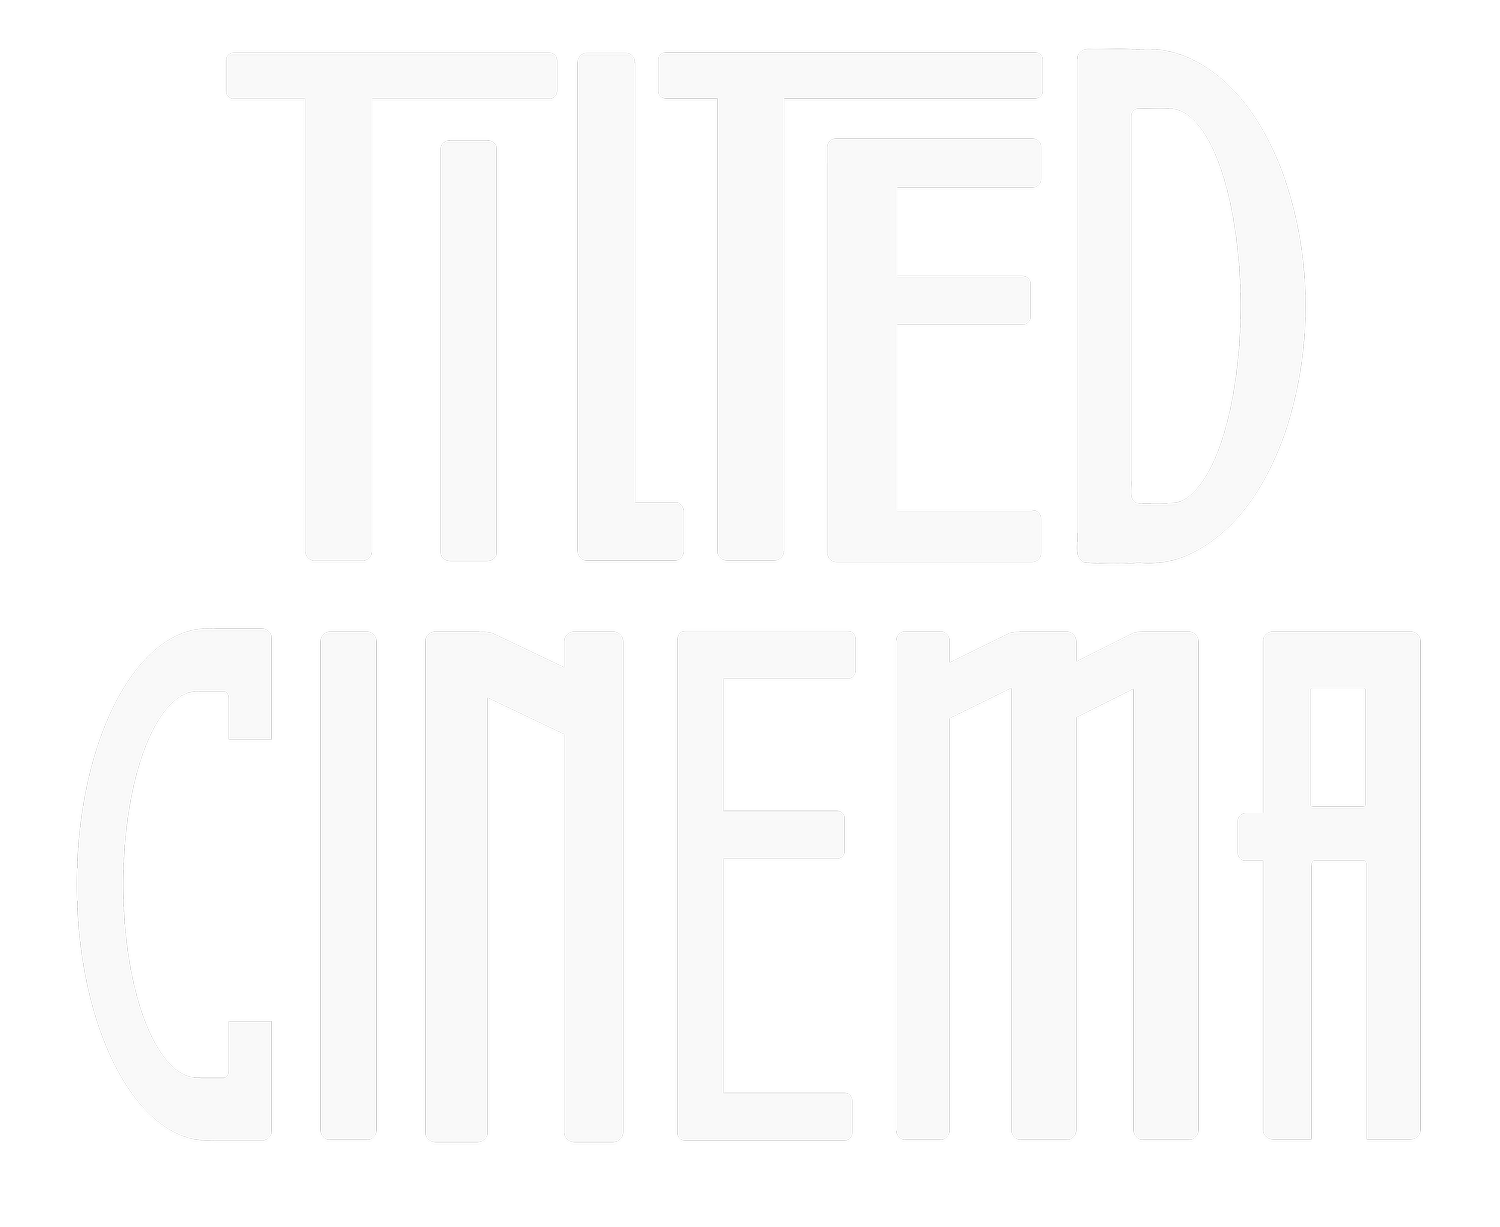 Tilted Cinema